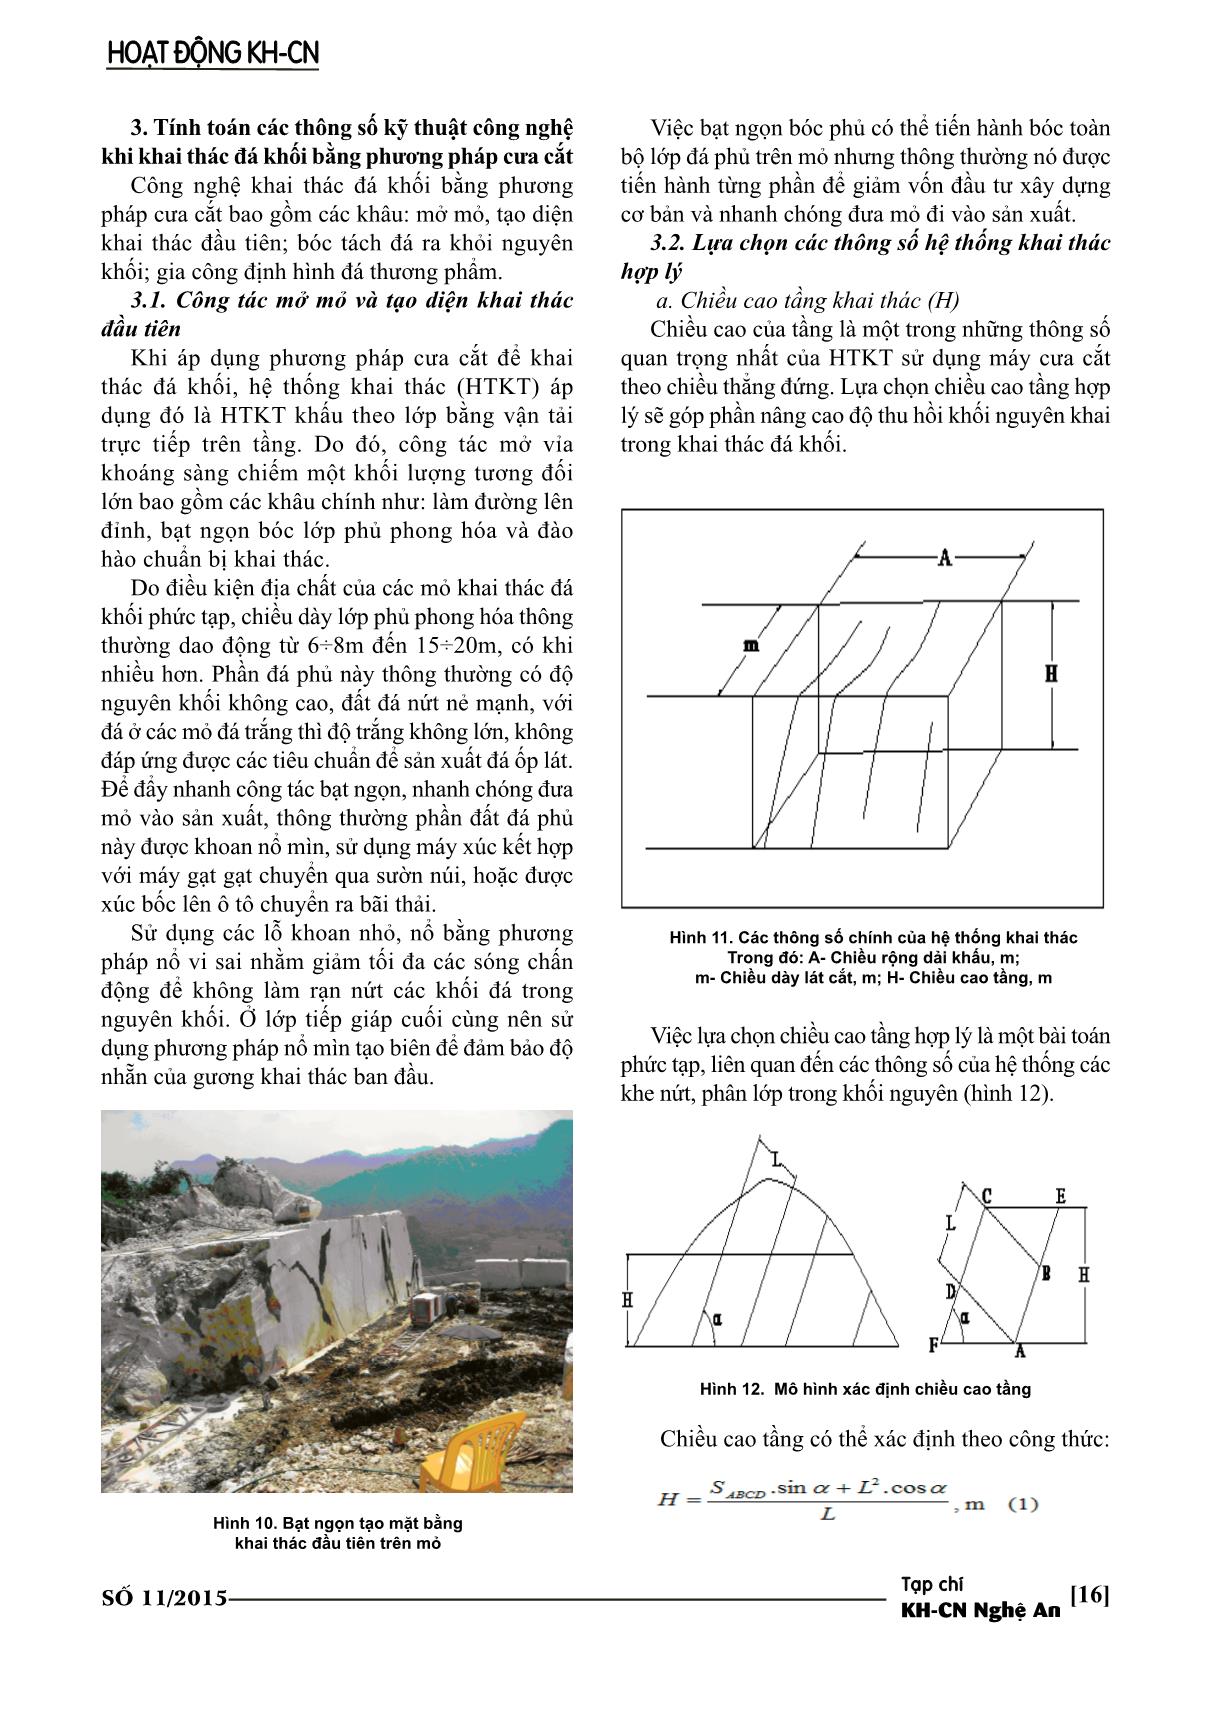 Giải pháp kỹ thuật công nghệ nâng cao hiệu quả khai thác đá khối ở Nghệ An trang 6